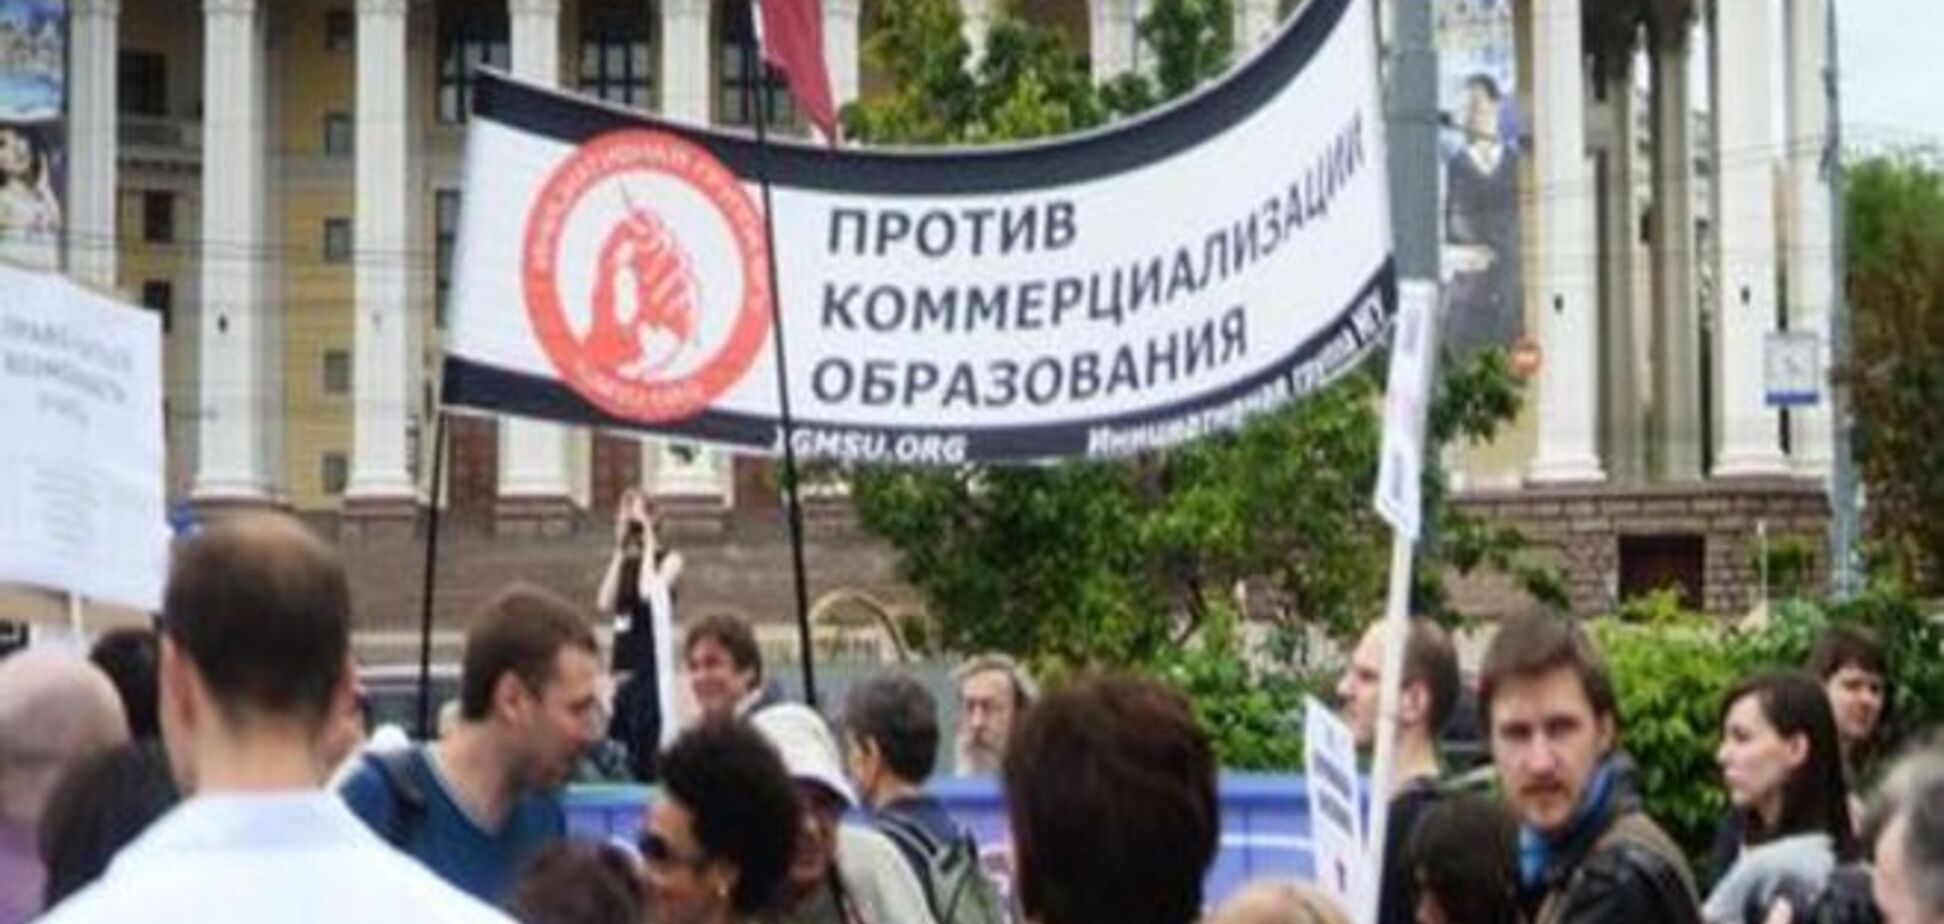 Реформа образования под огнем: профсоюзы в РФ возмущены оптимизацией школ и ВУЗов